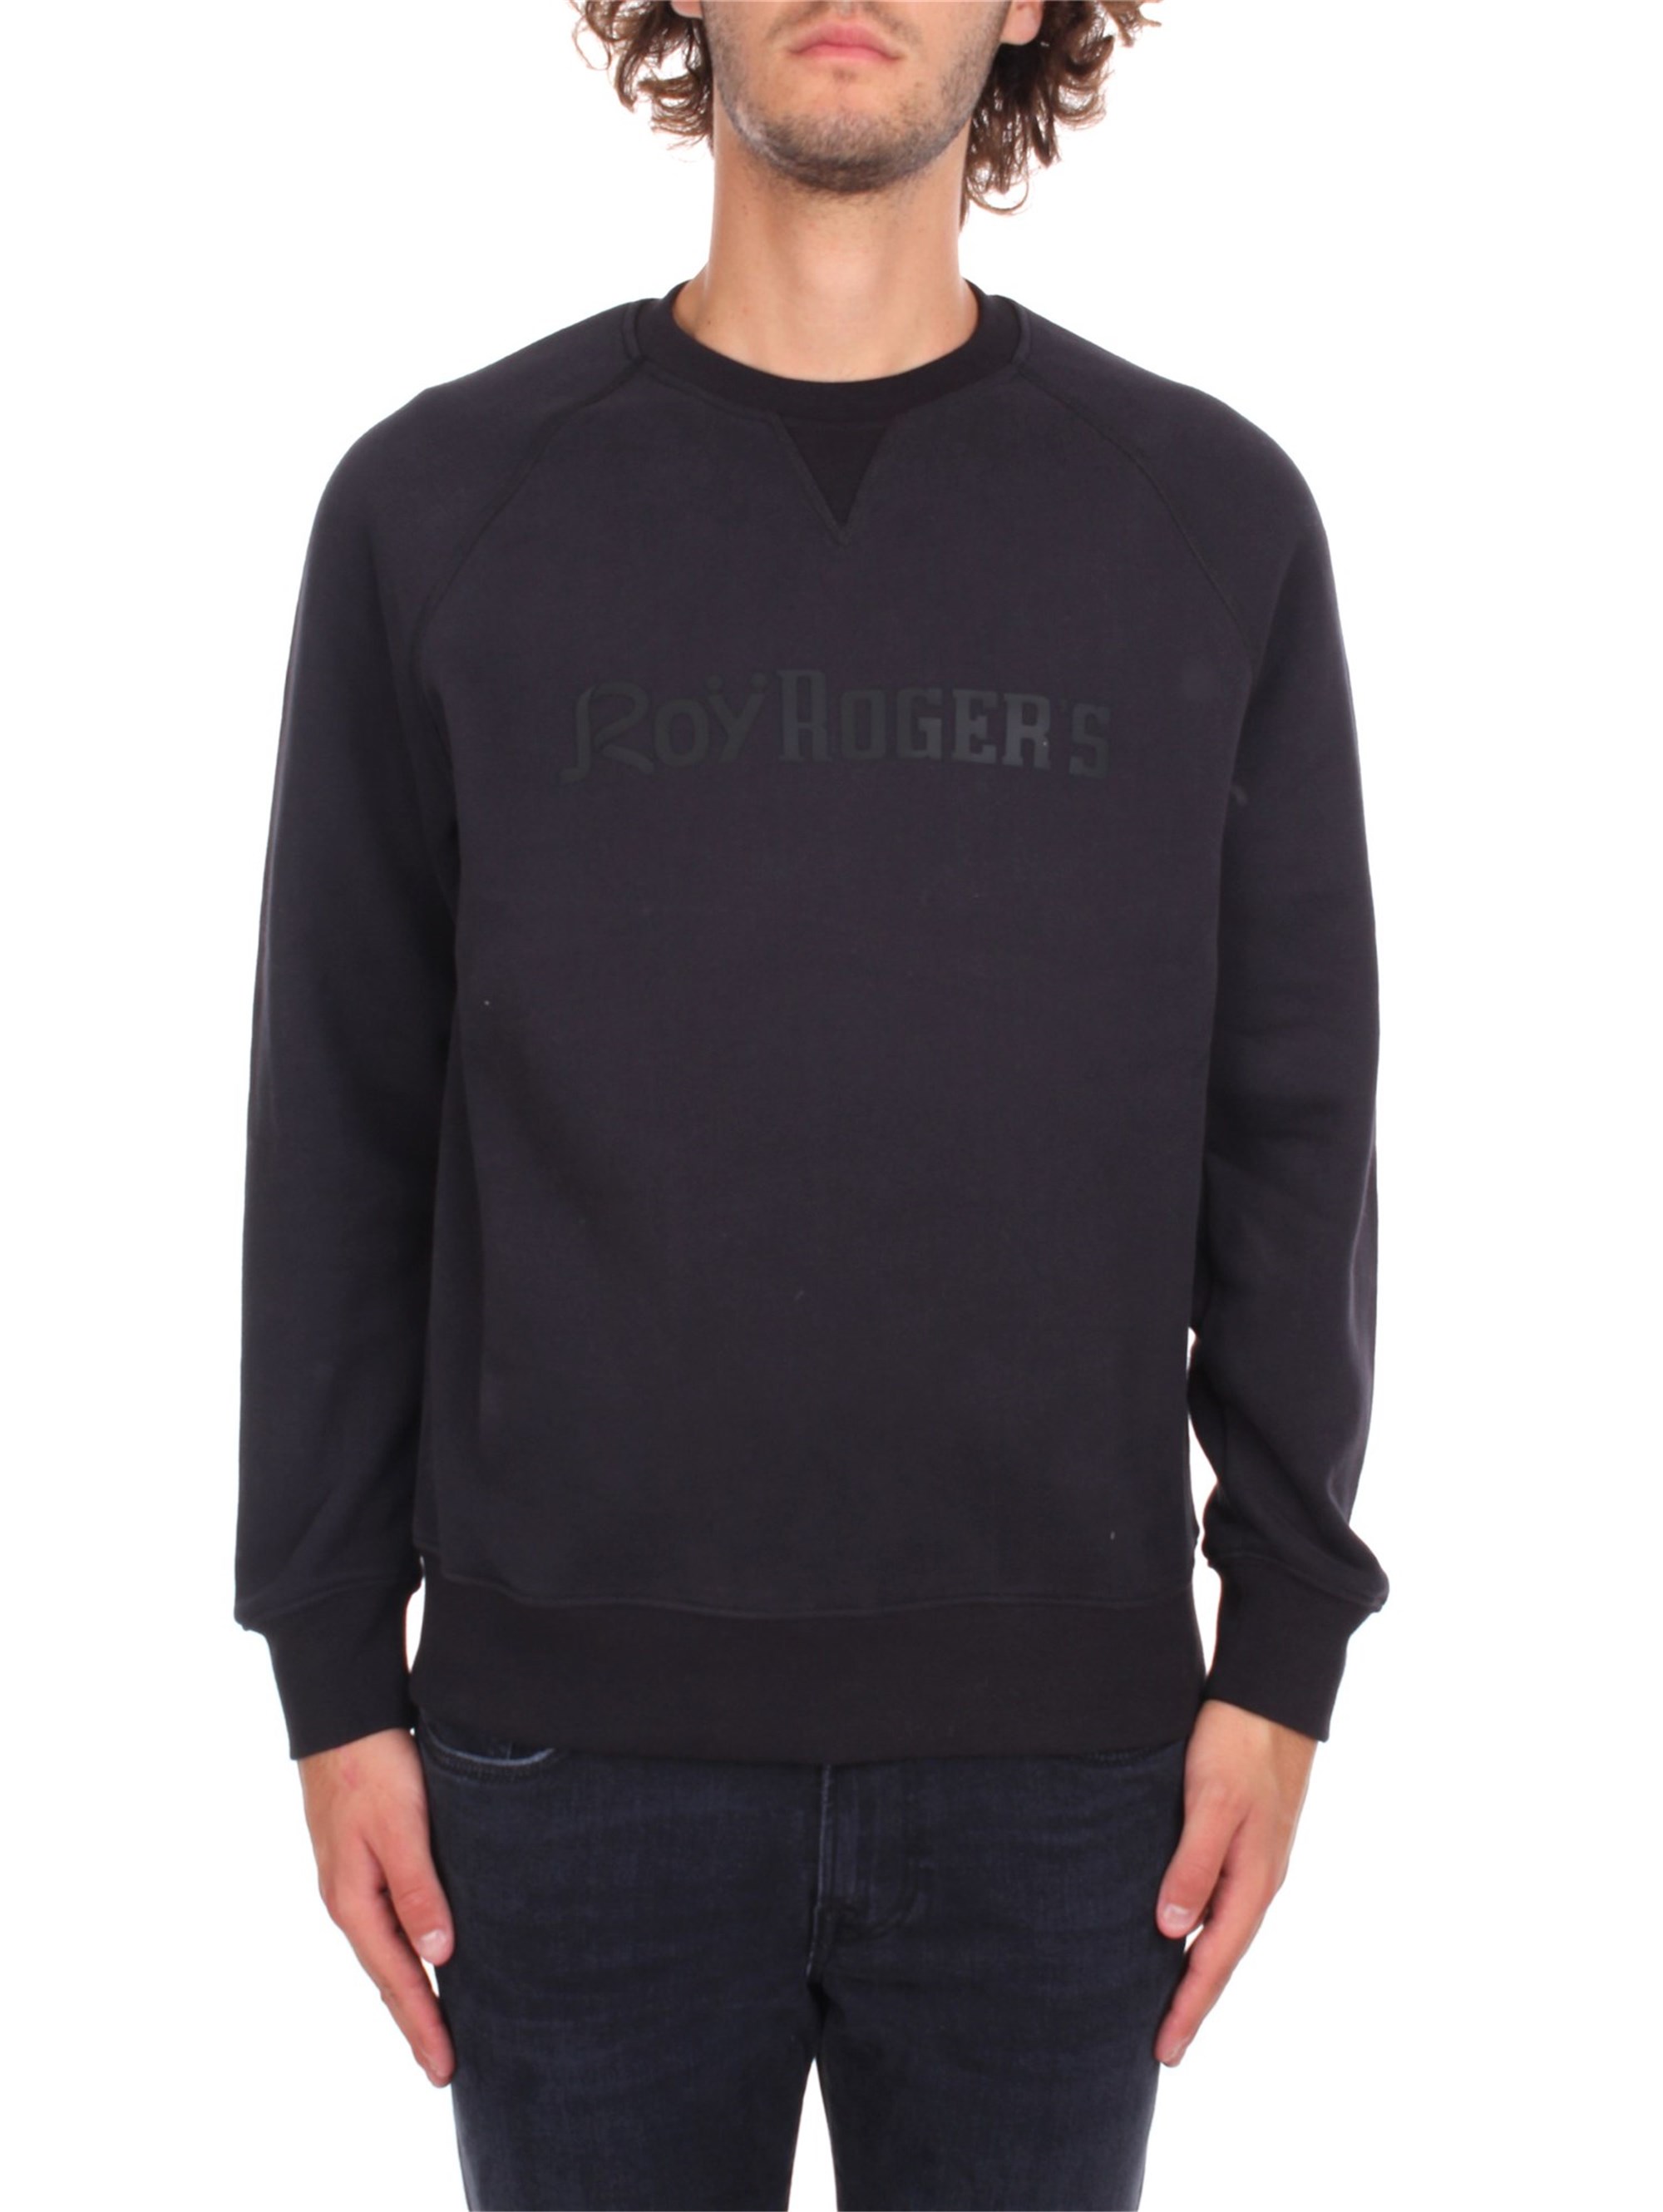 roy roger's Sweatshirts Herren günstig online kaufen